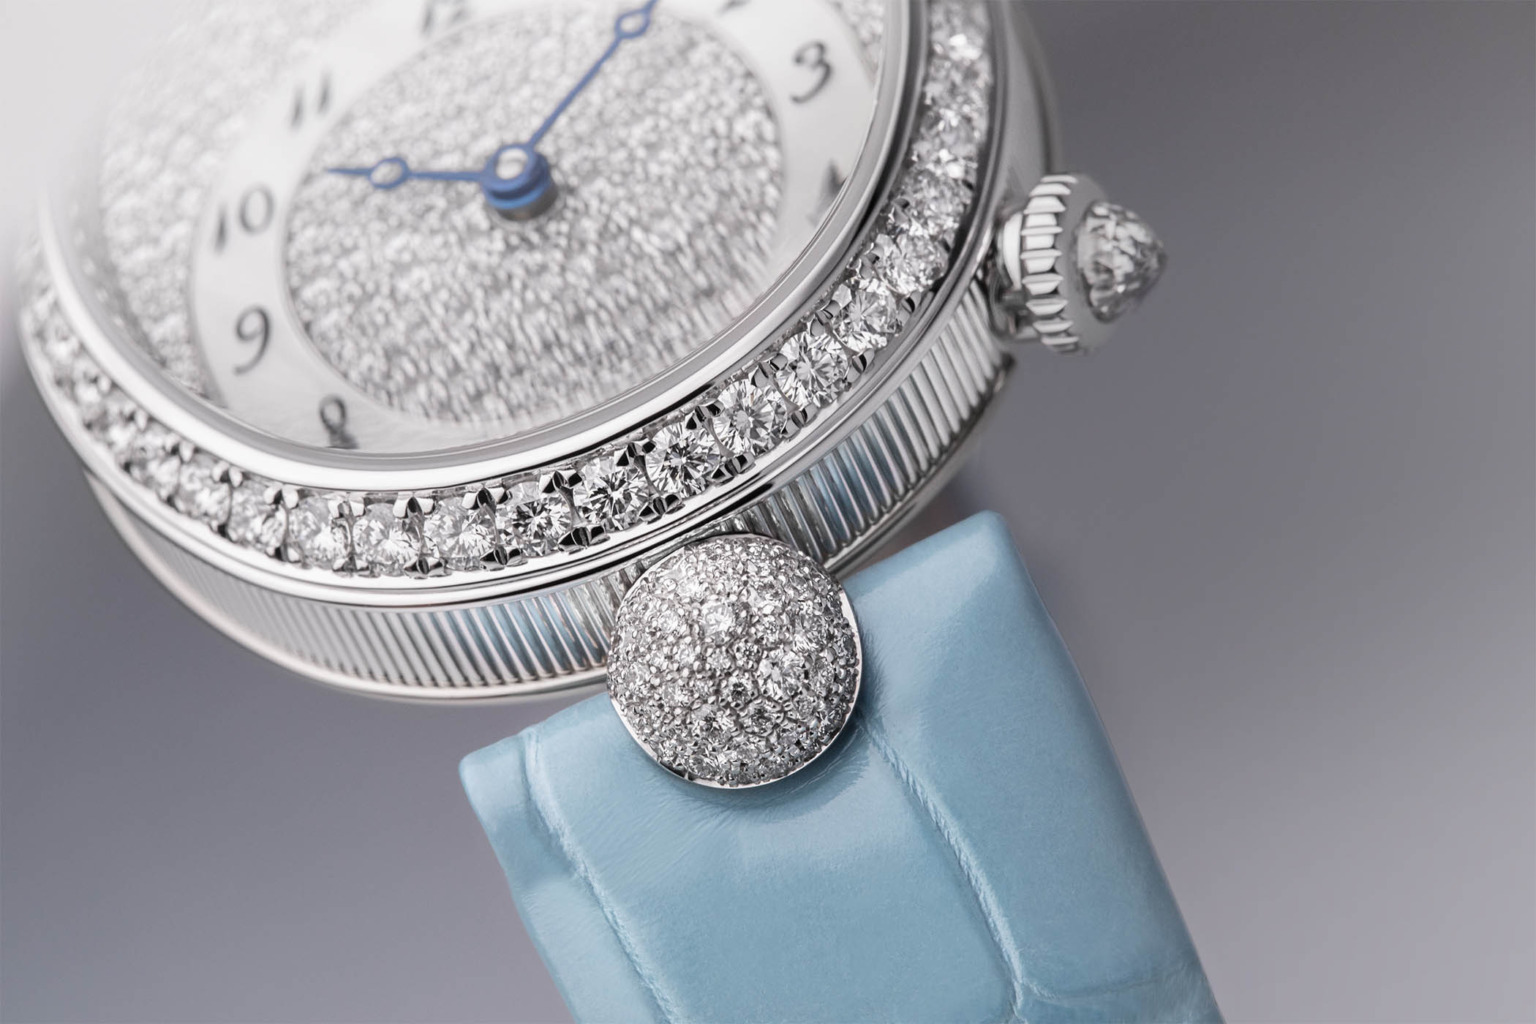 đồng hồ Breguet nữ kim cương cao cấp Thụy Sĩ